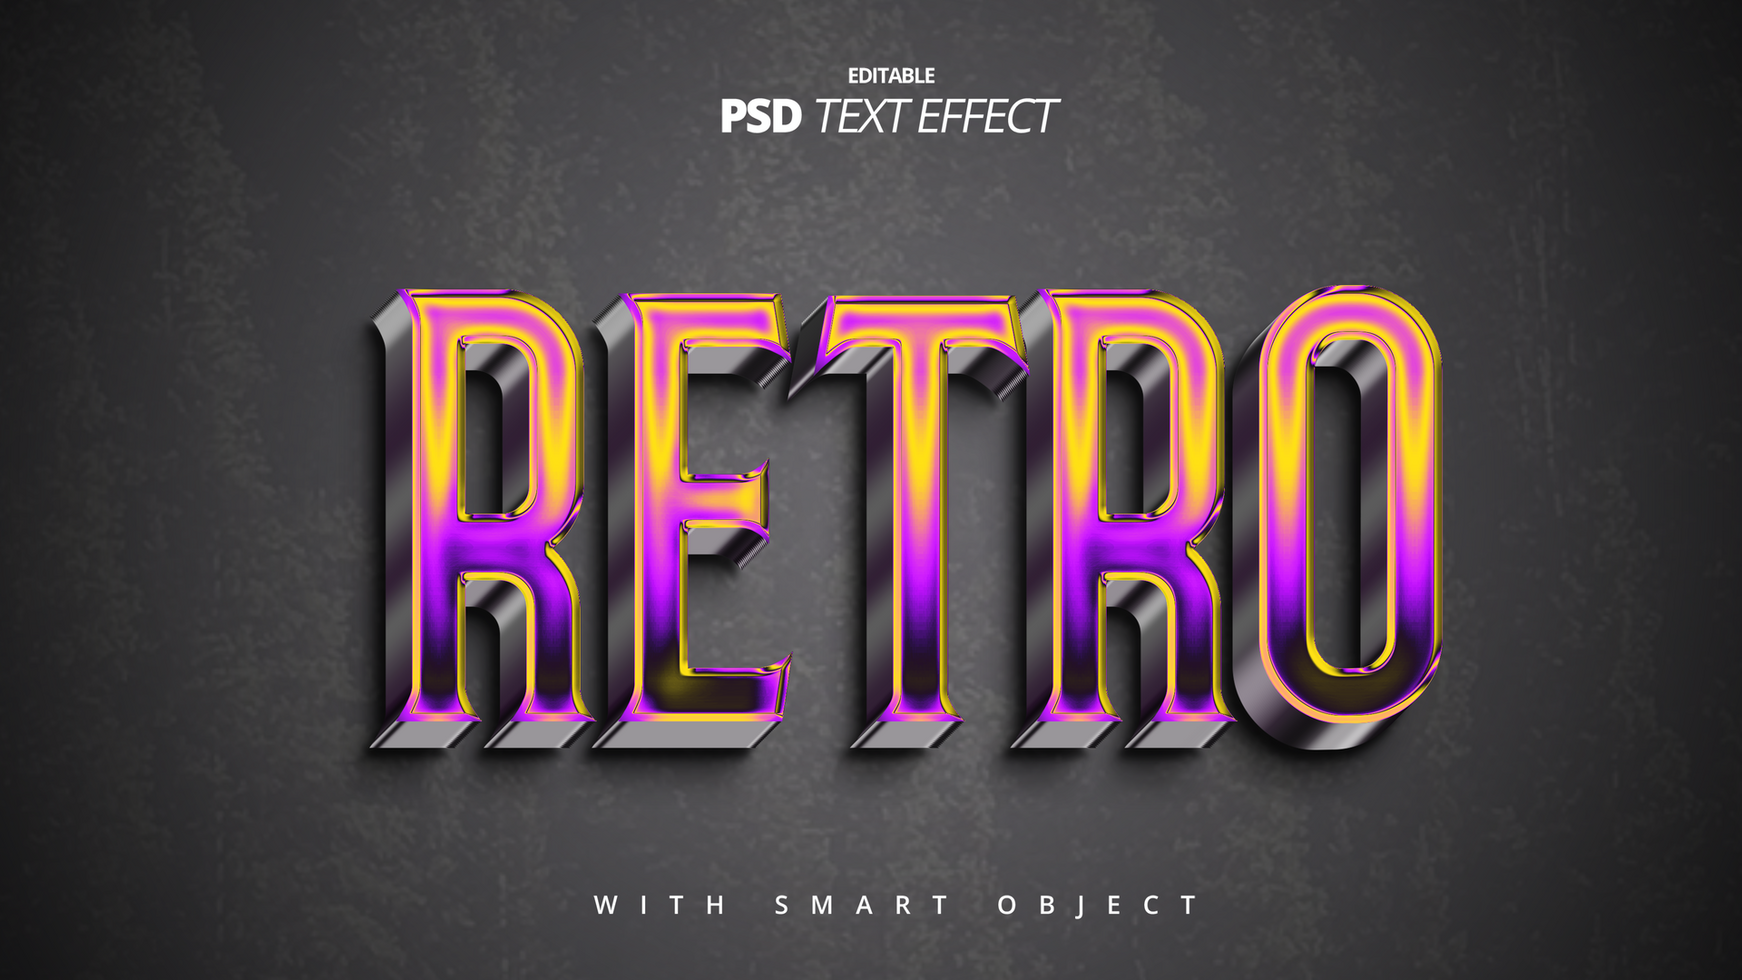 Retro vintage 3d text effect design psd